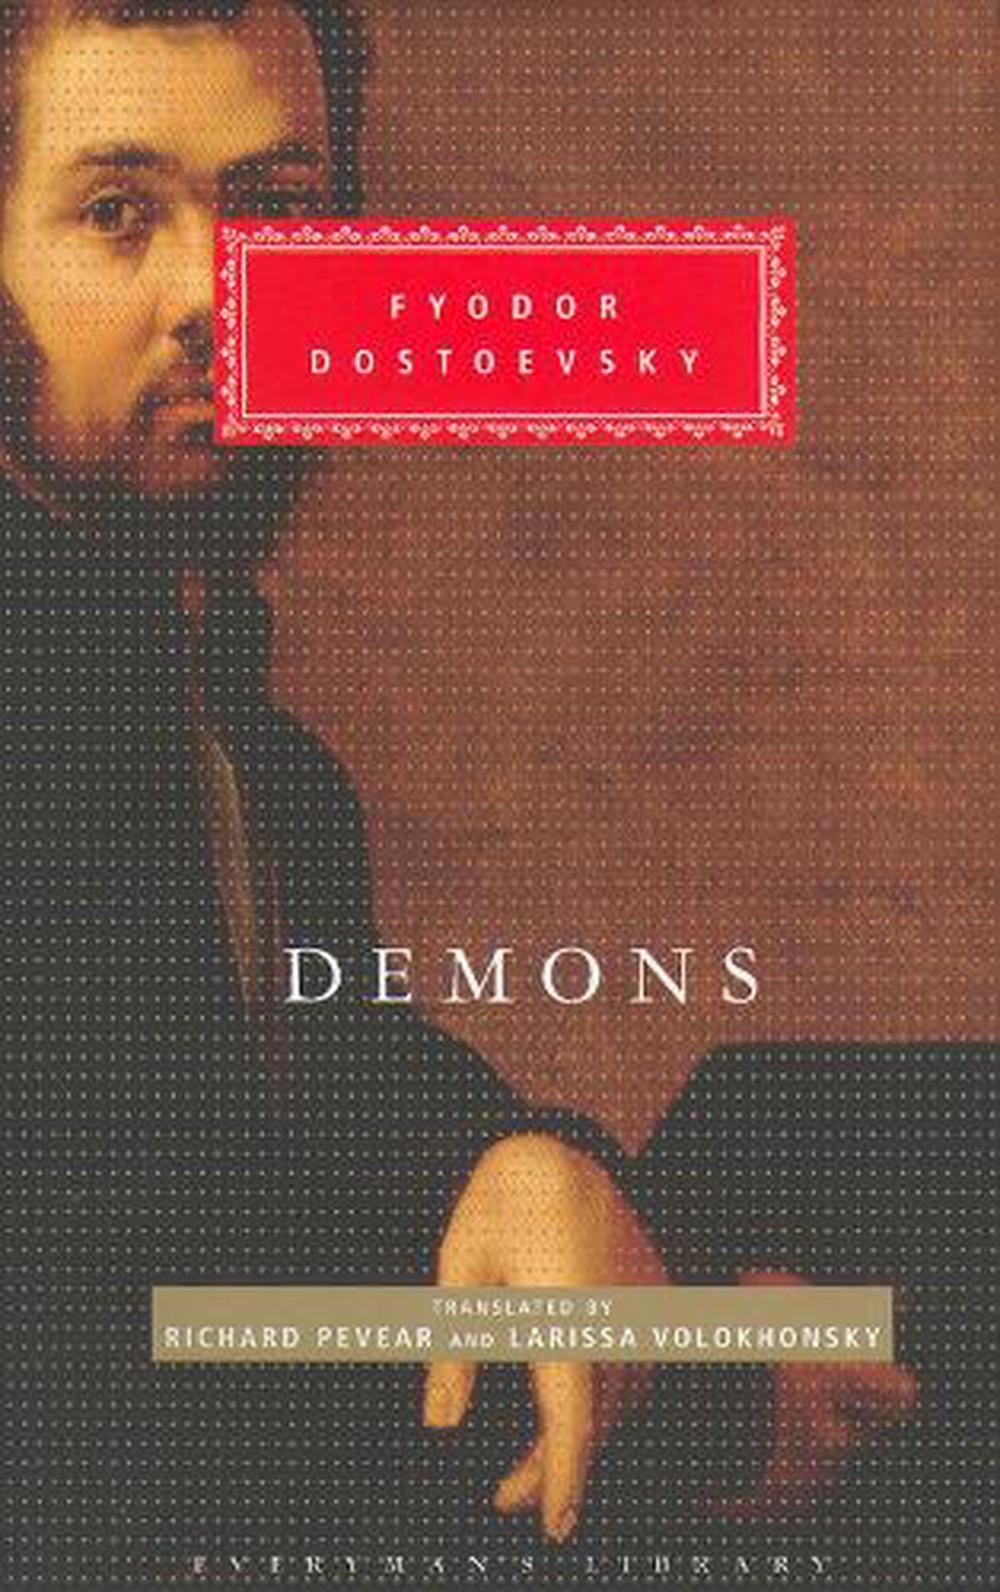 demons dostoevsky